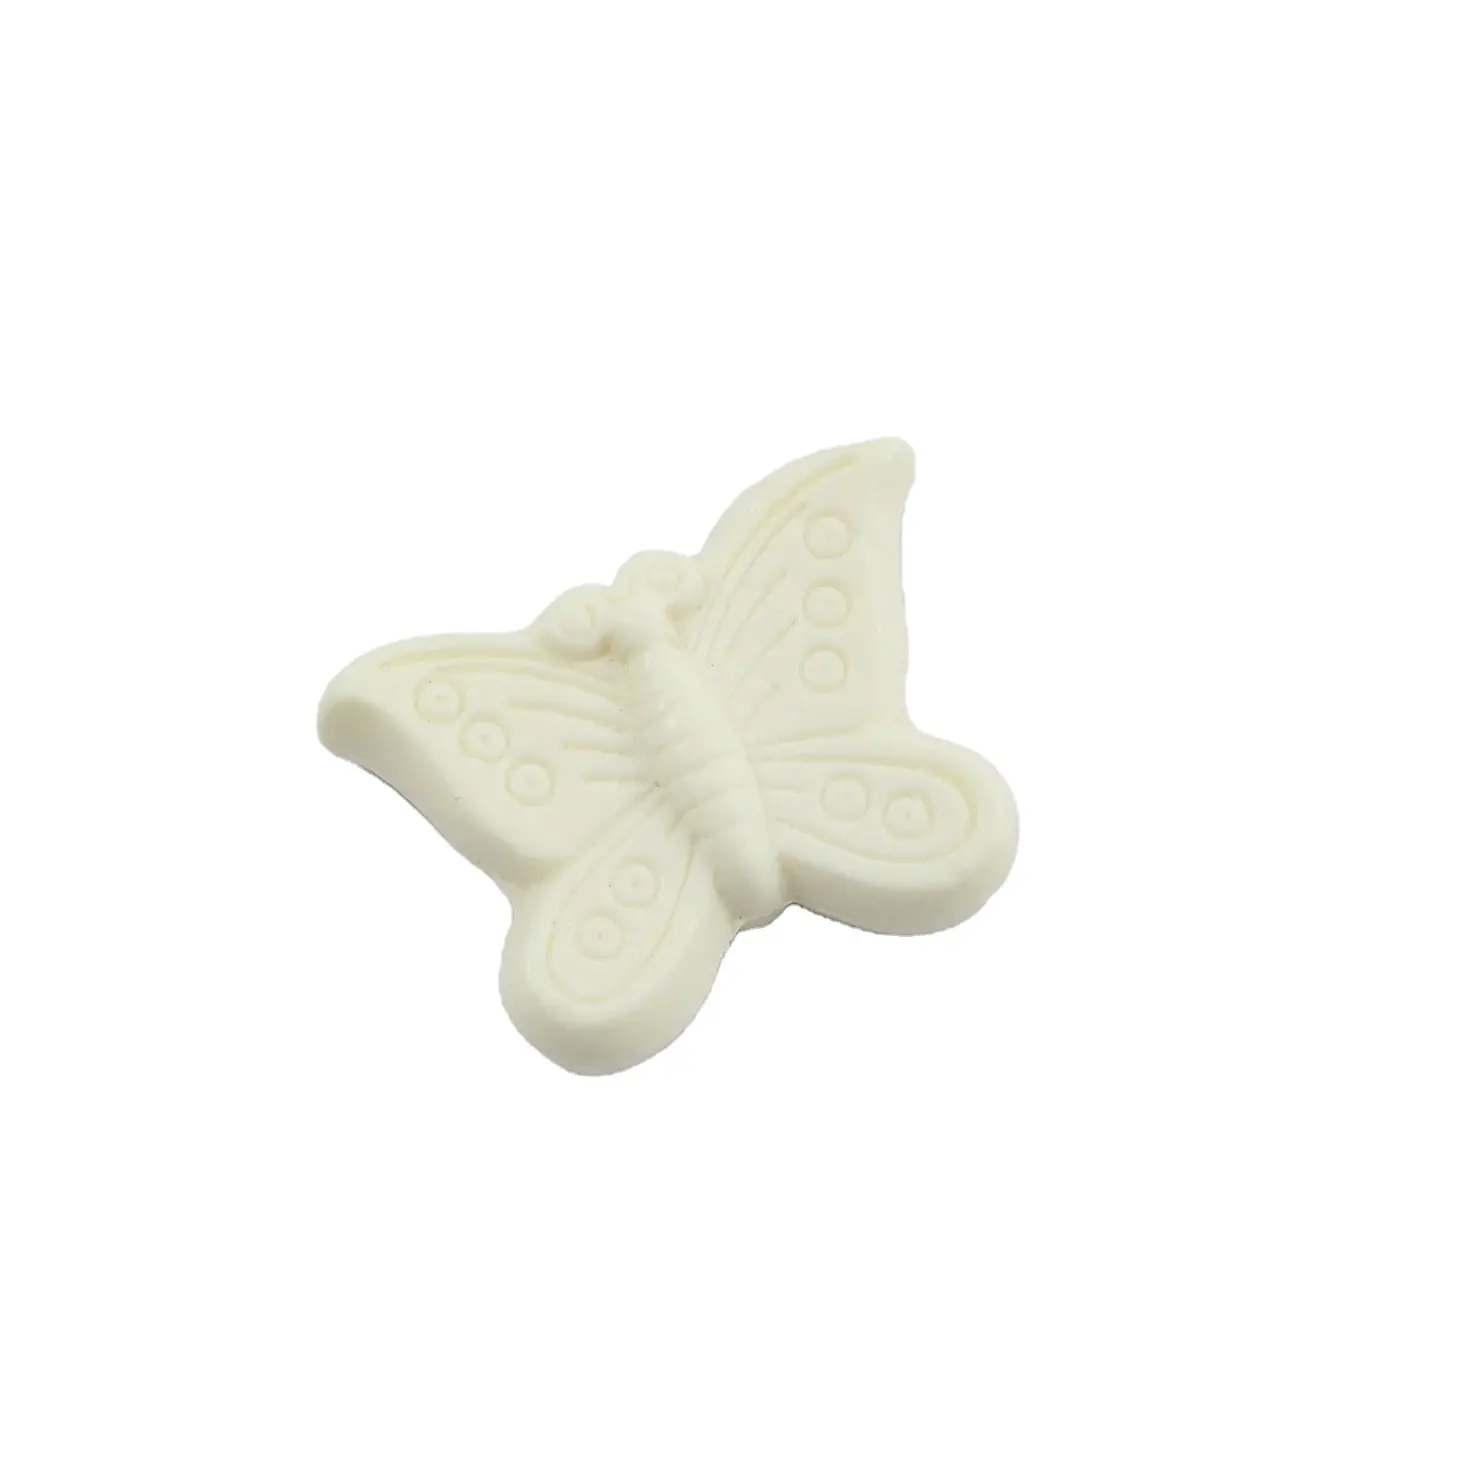 Accentra marchio semplice eleganza e purezza profumo marino forma di farfalla organico sapone bianco